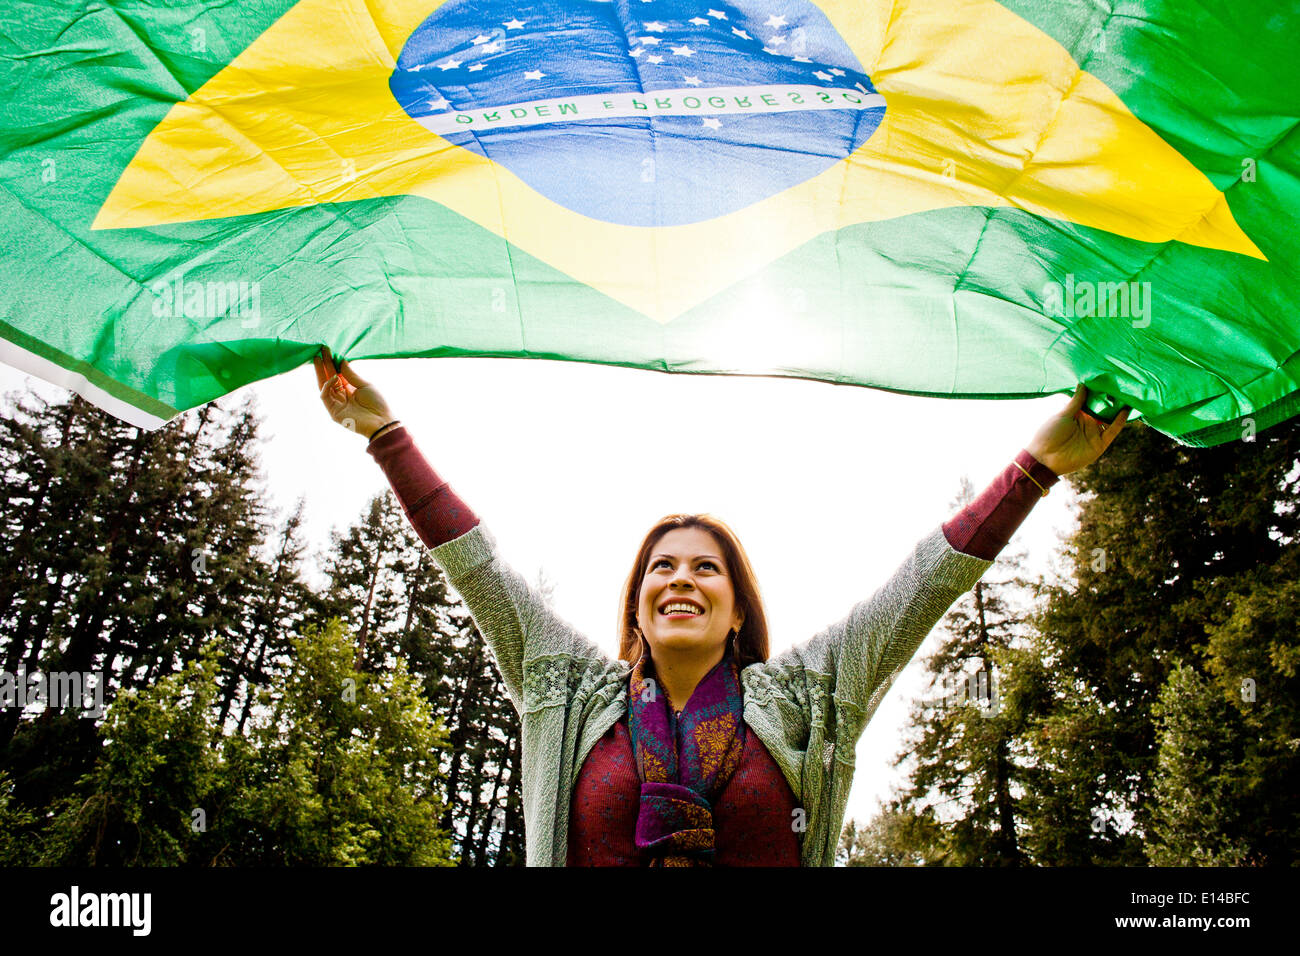 Hispanic woman flying Brazilian flag Stock Photo